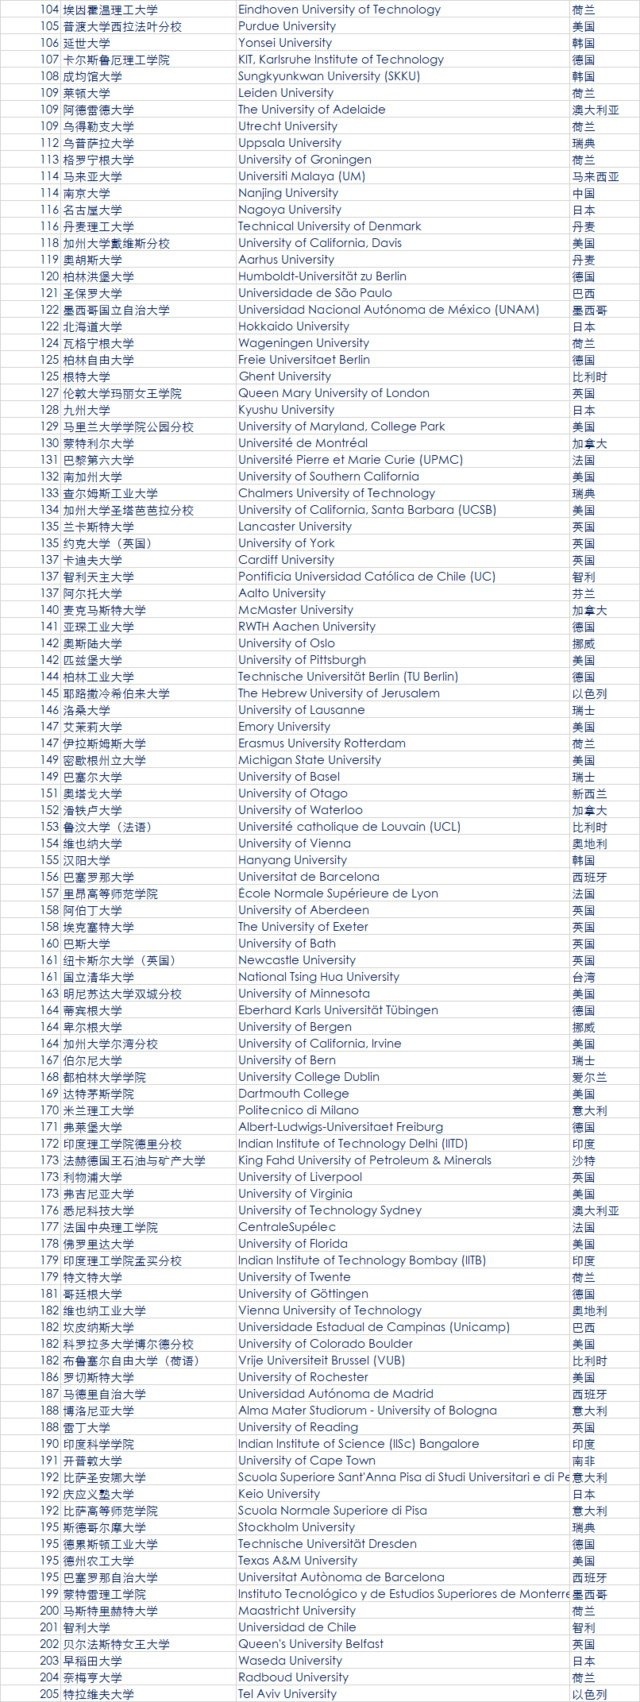 最新QS全球大学排名公布 中国大陆39所大学上榜3